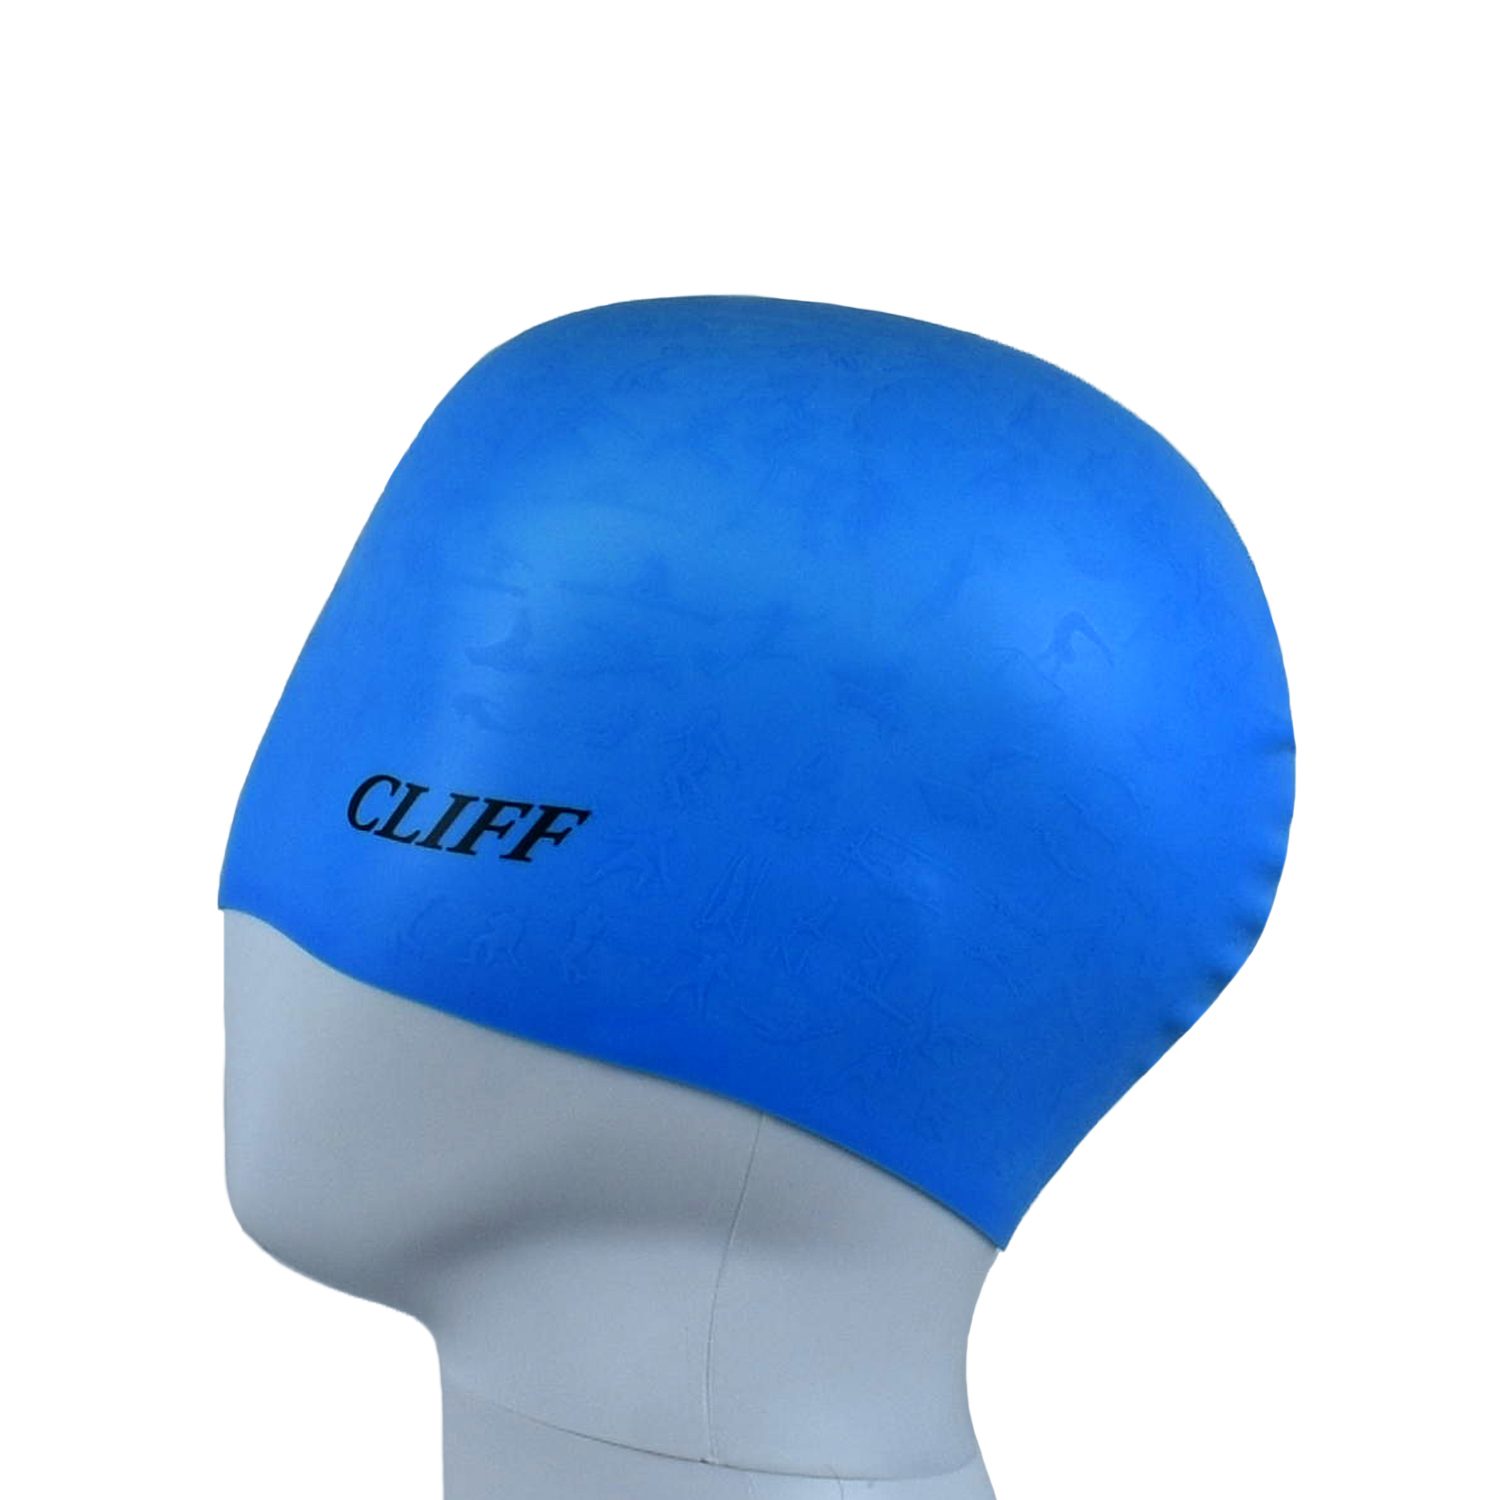 Шапочка для плавания CLIFF силиконовая, с рельефом, голубая